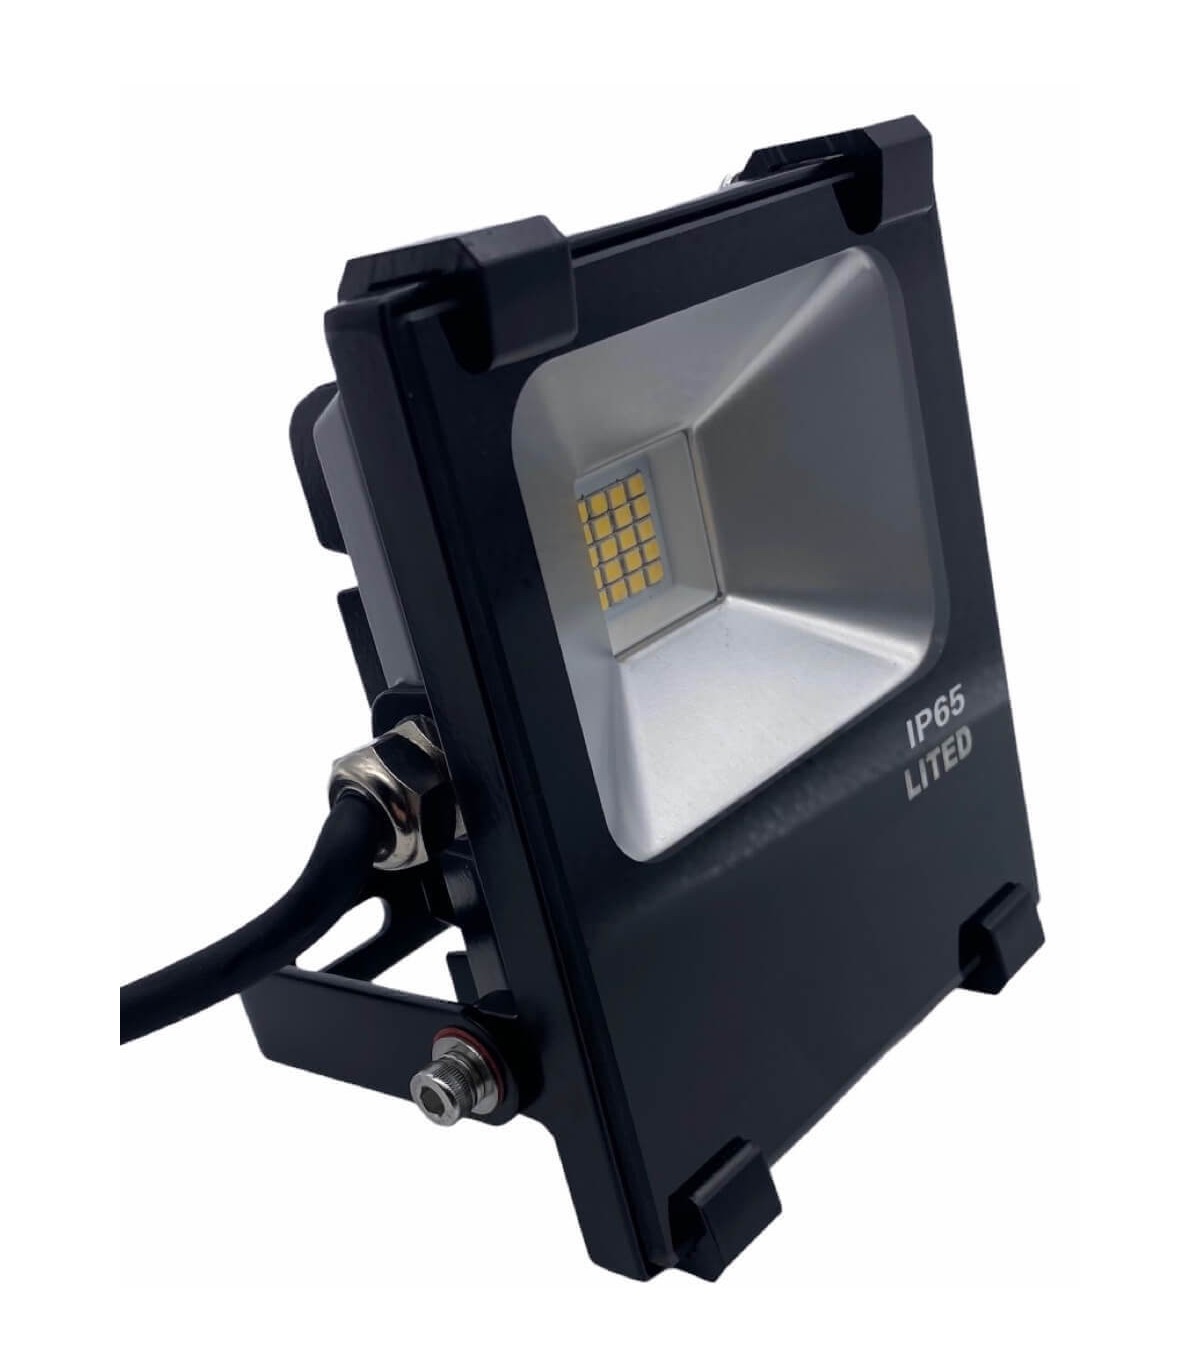 Lampe Solaire puissante TECH DISCOUNT - étanche IP65 - LED